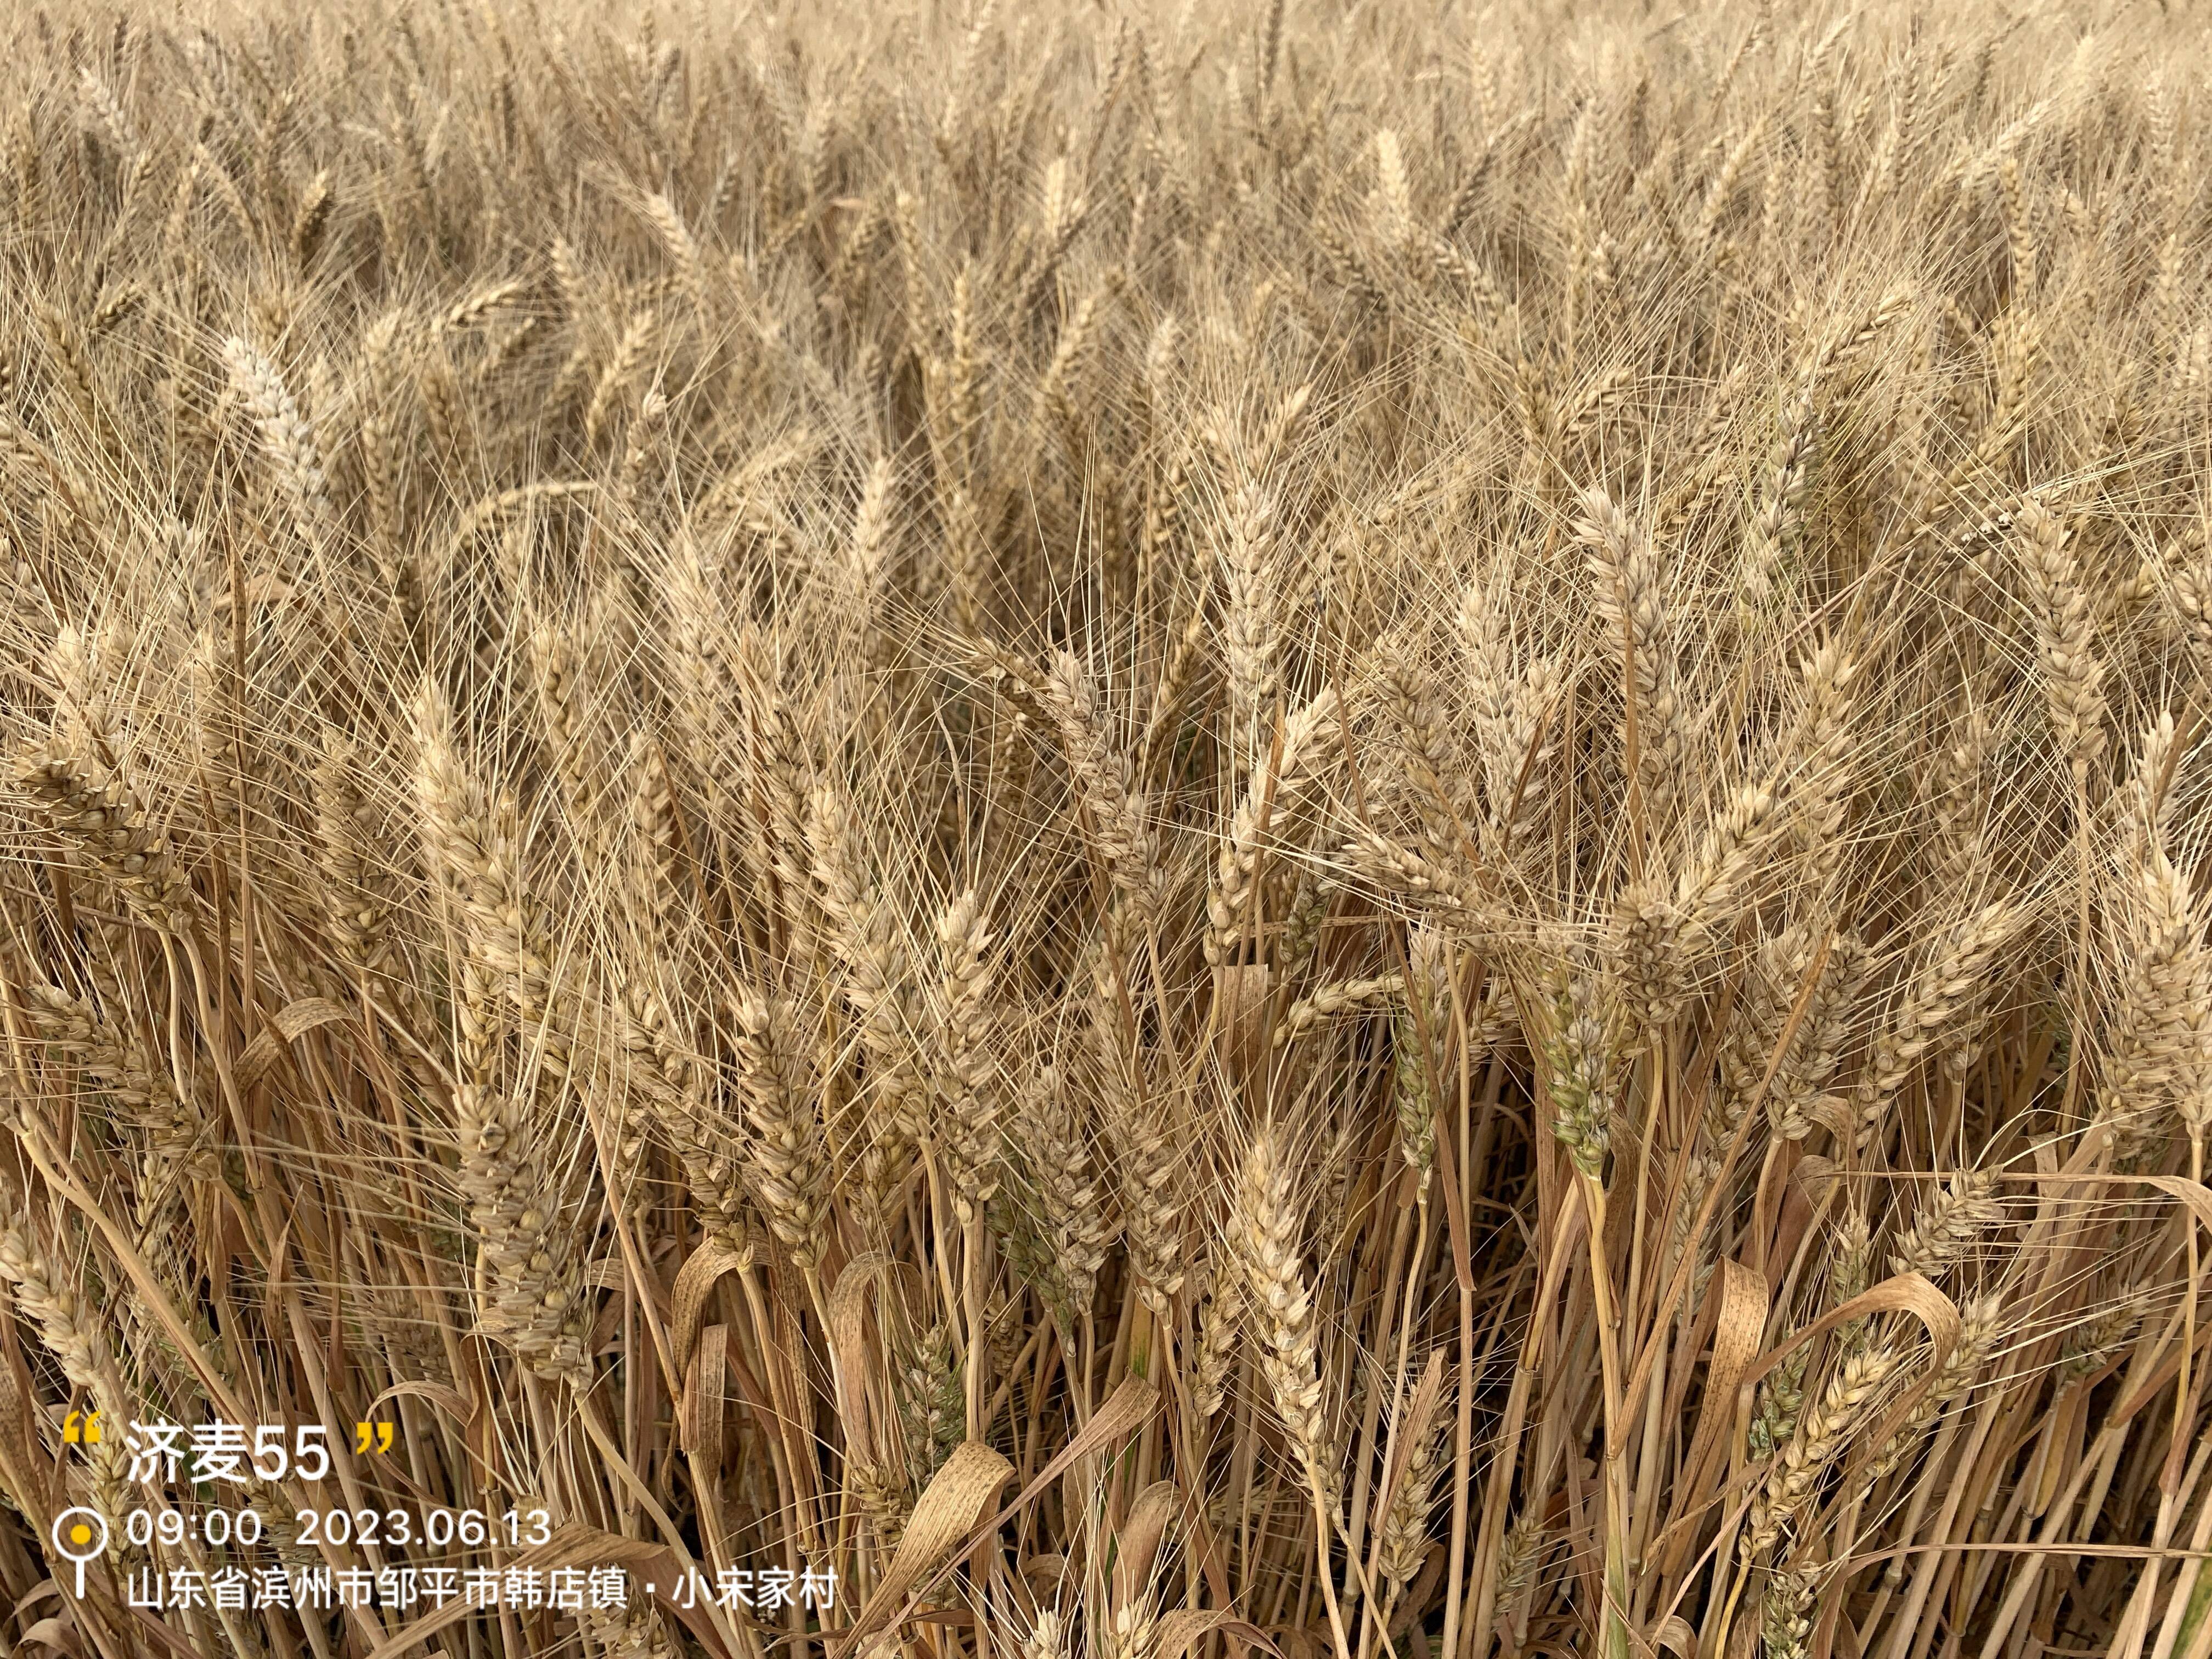 平均亩产787.49公斤 济麦55创滨州市小麦高产纪录